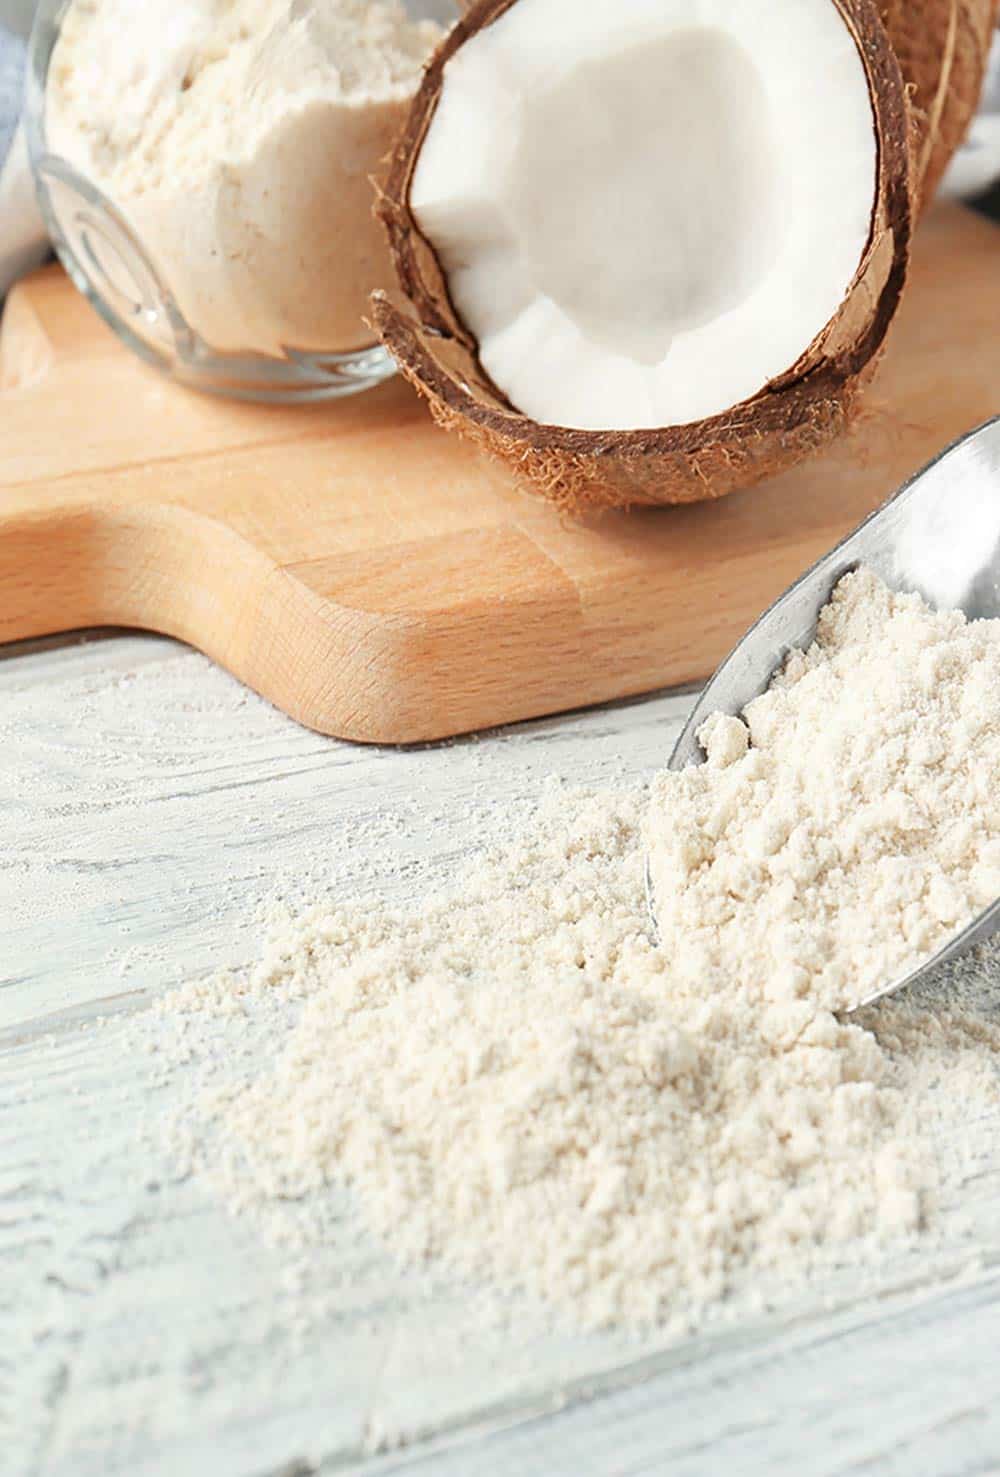 coconut flour substitutes